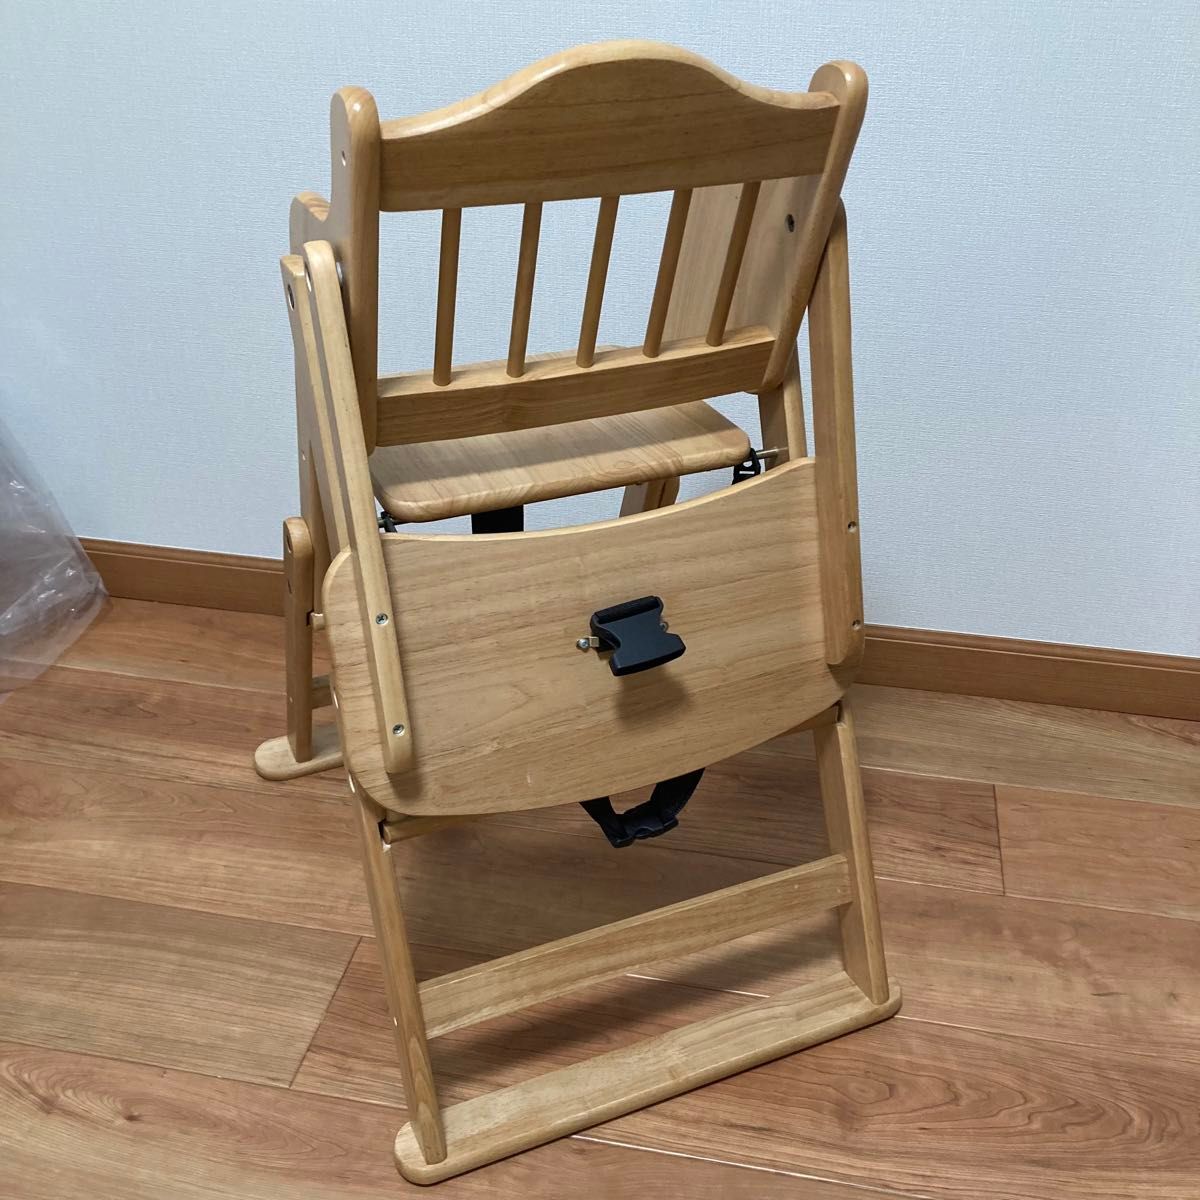 美品 ベビーチェア 木製 ハイチェア 子供椅子 折りたたみ可 椅子 テーブル付 2way